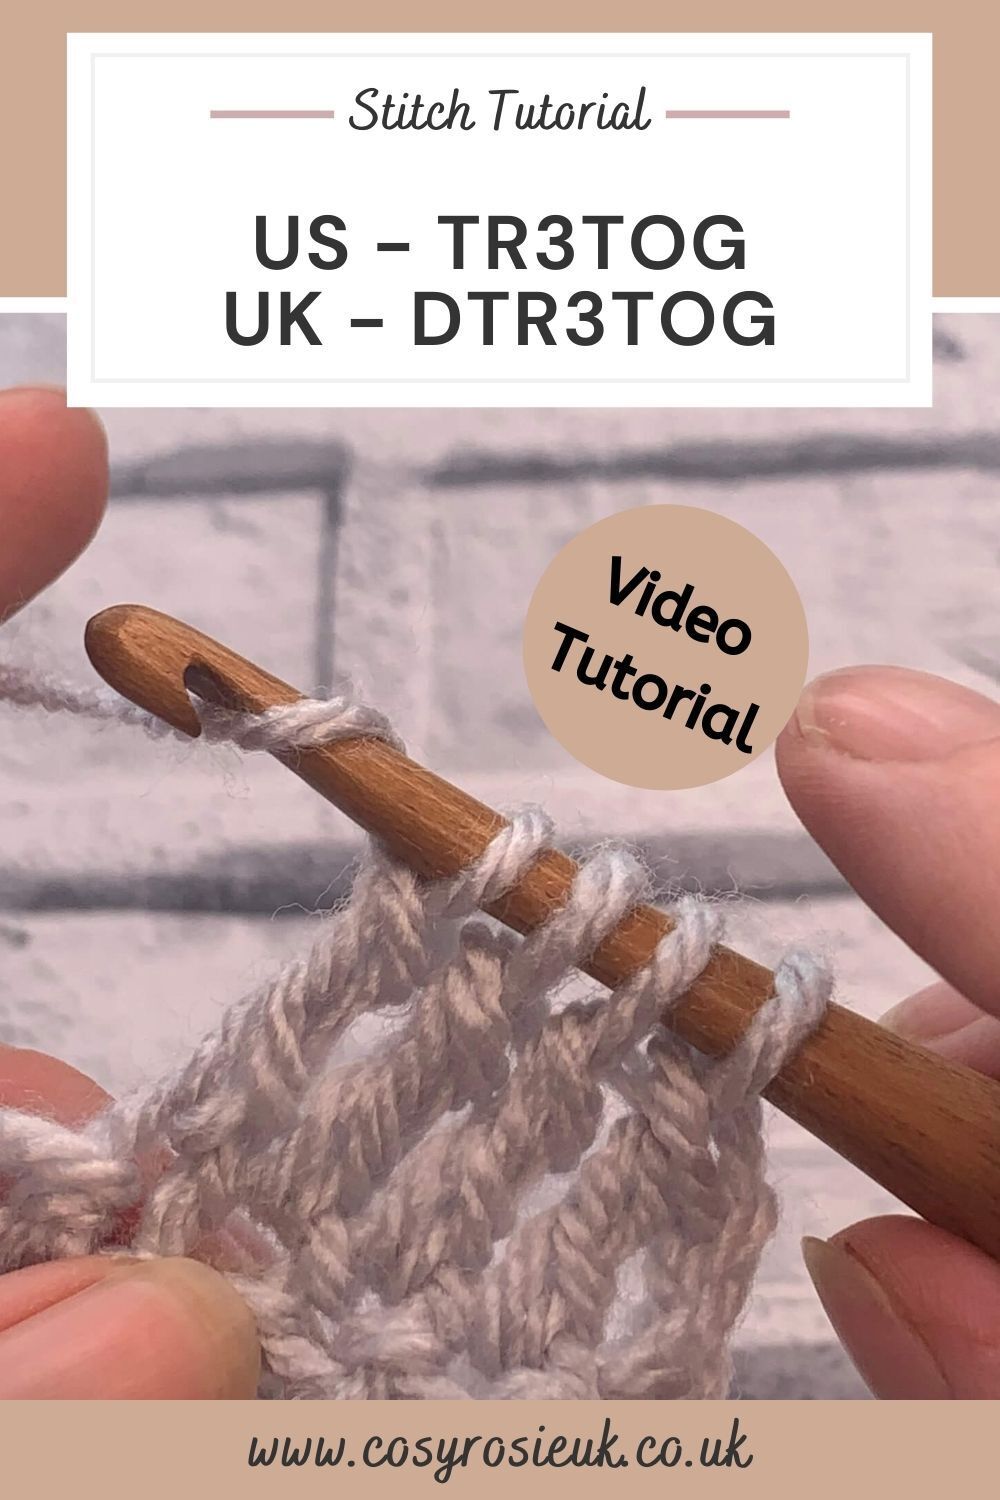 Dtr3tog tutorial uk